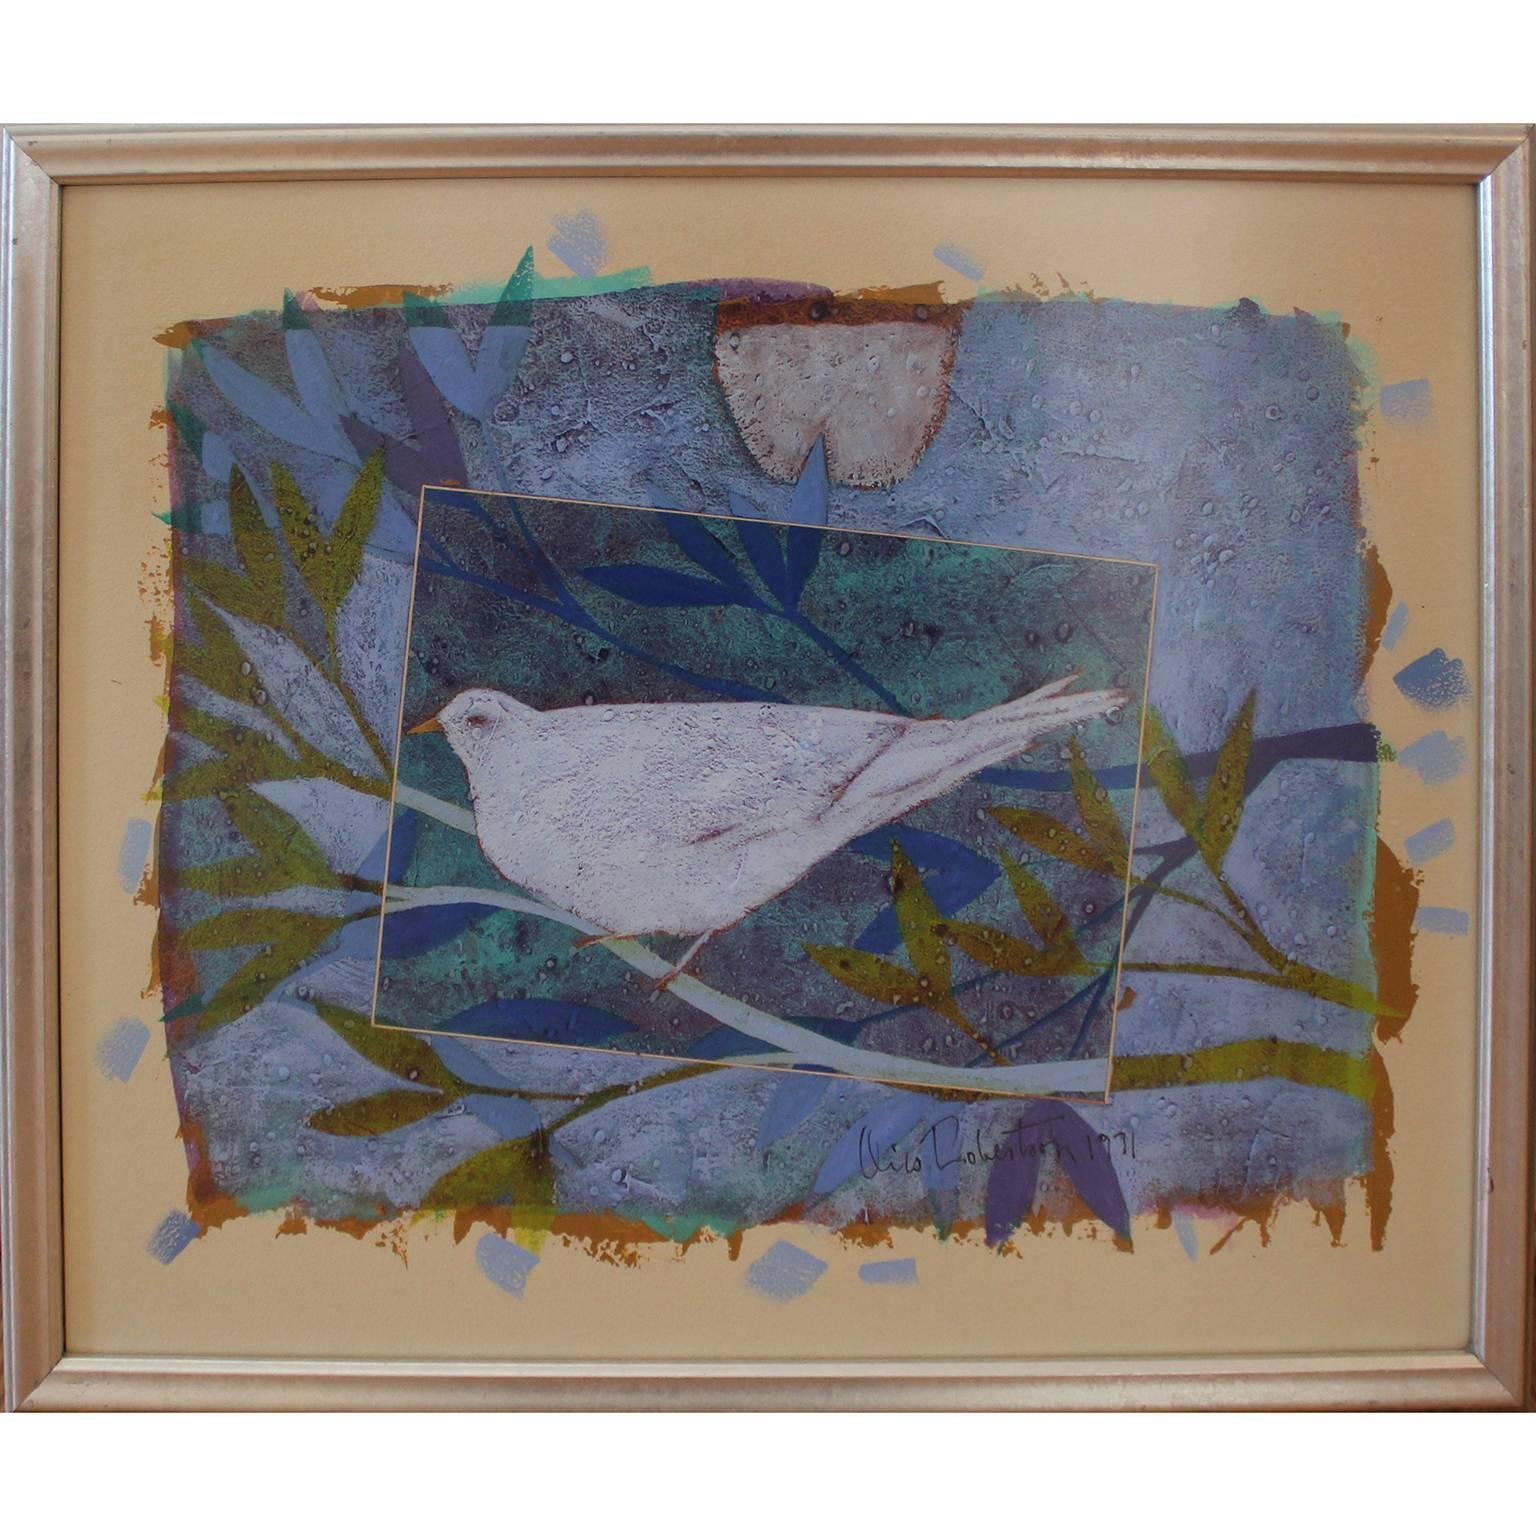 Animal Painting Oris Robertson - Peinture à l'huile moderne d'une colombe sur papier géométrique, bleue